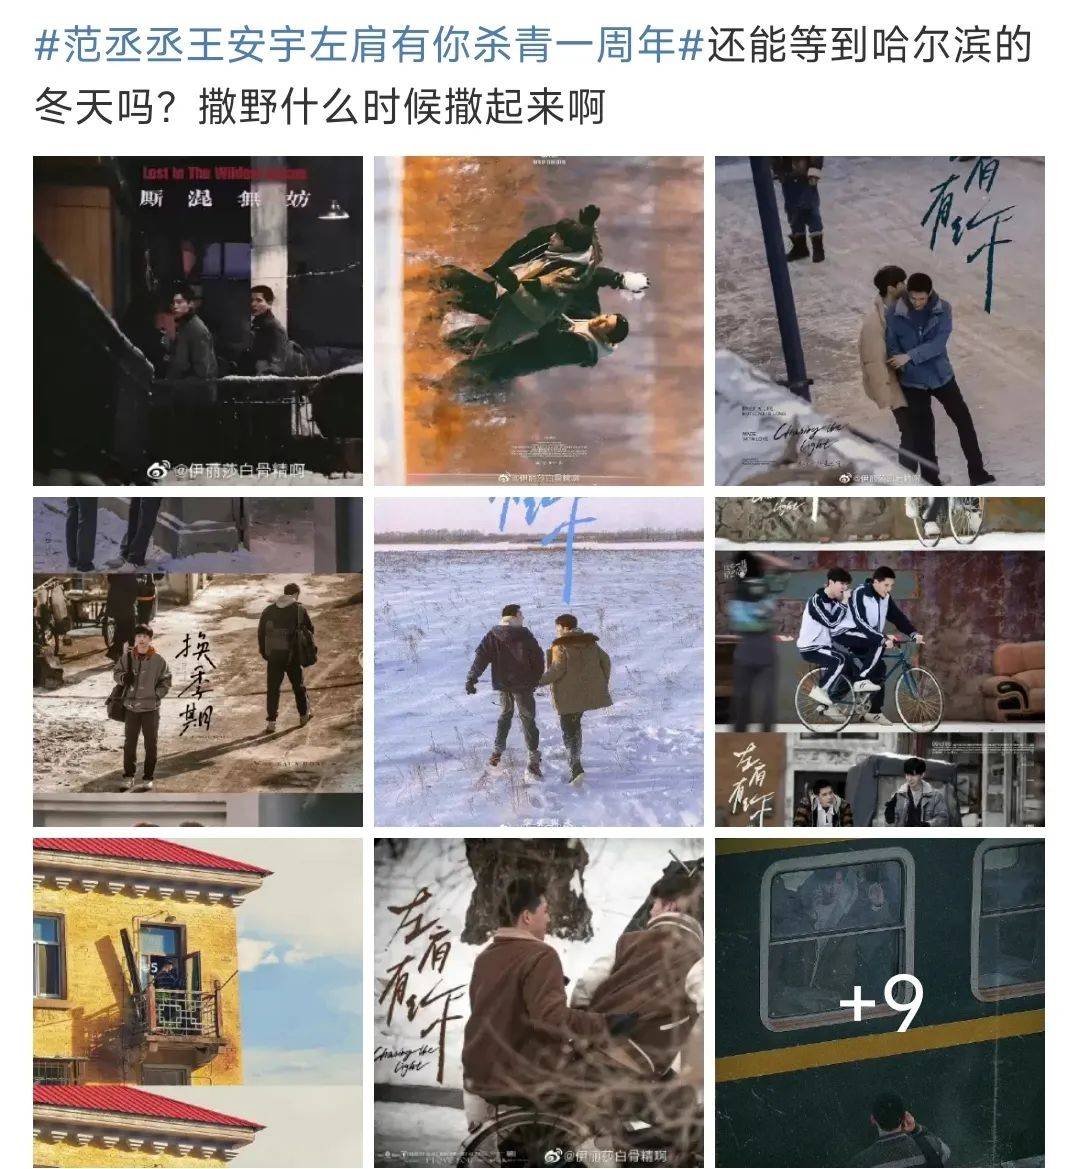 刘浩然的“体制内男友”营销稿件都屏蔽了这个关键词，不允许再提